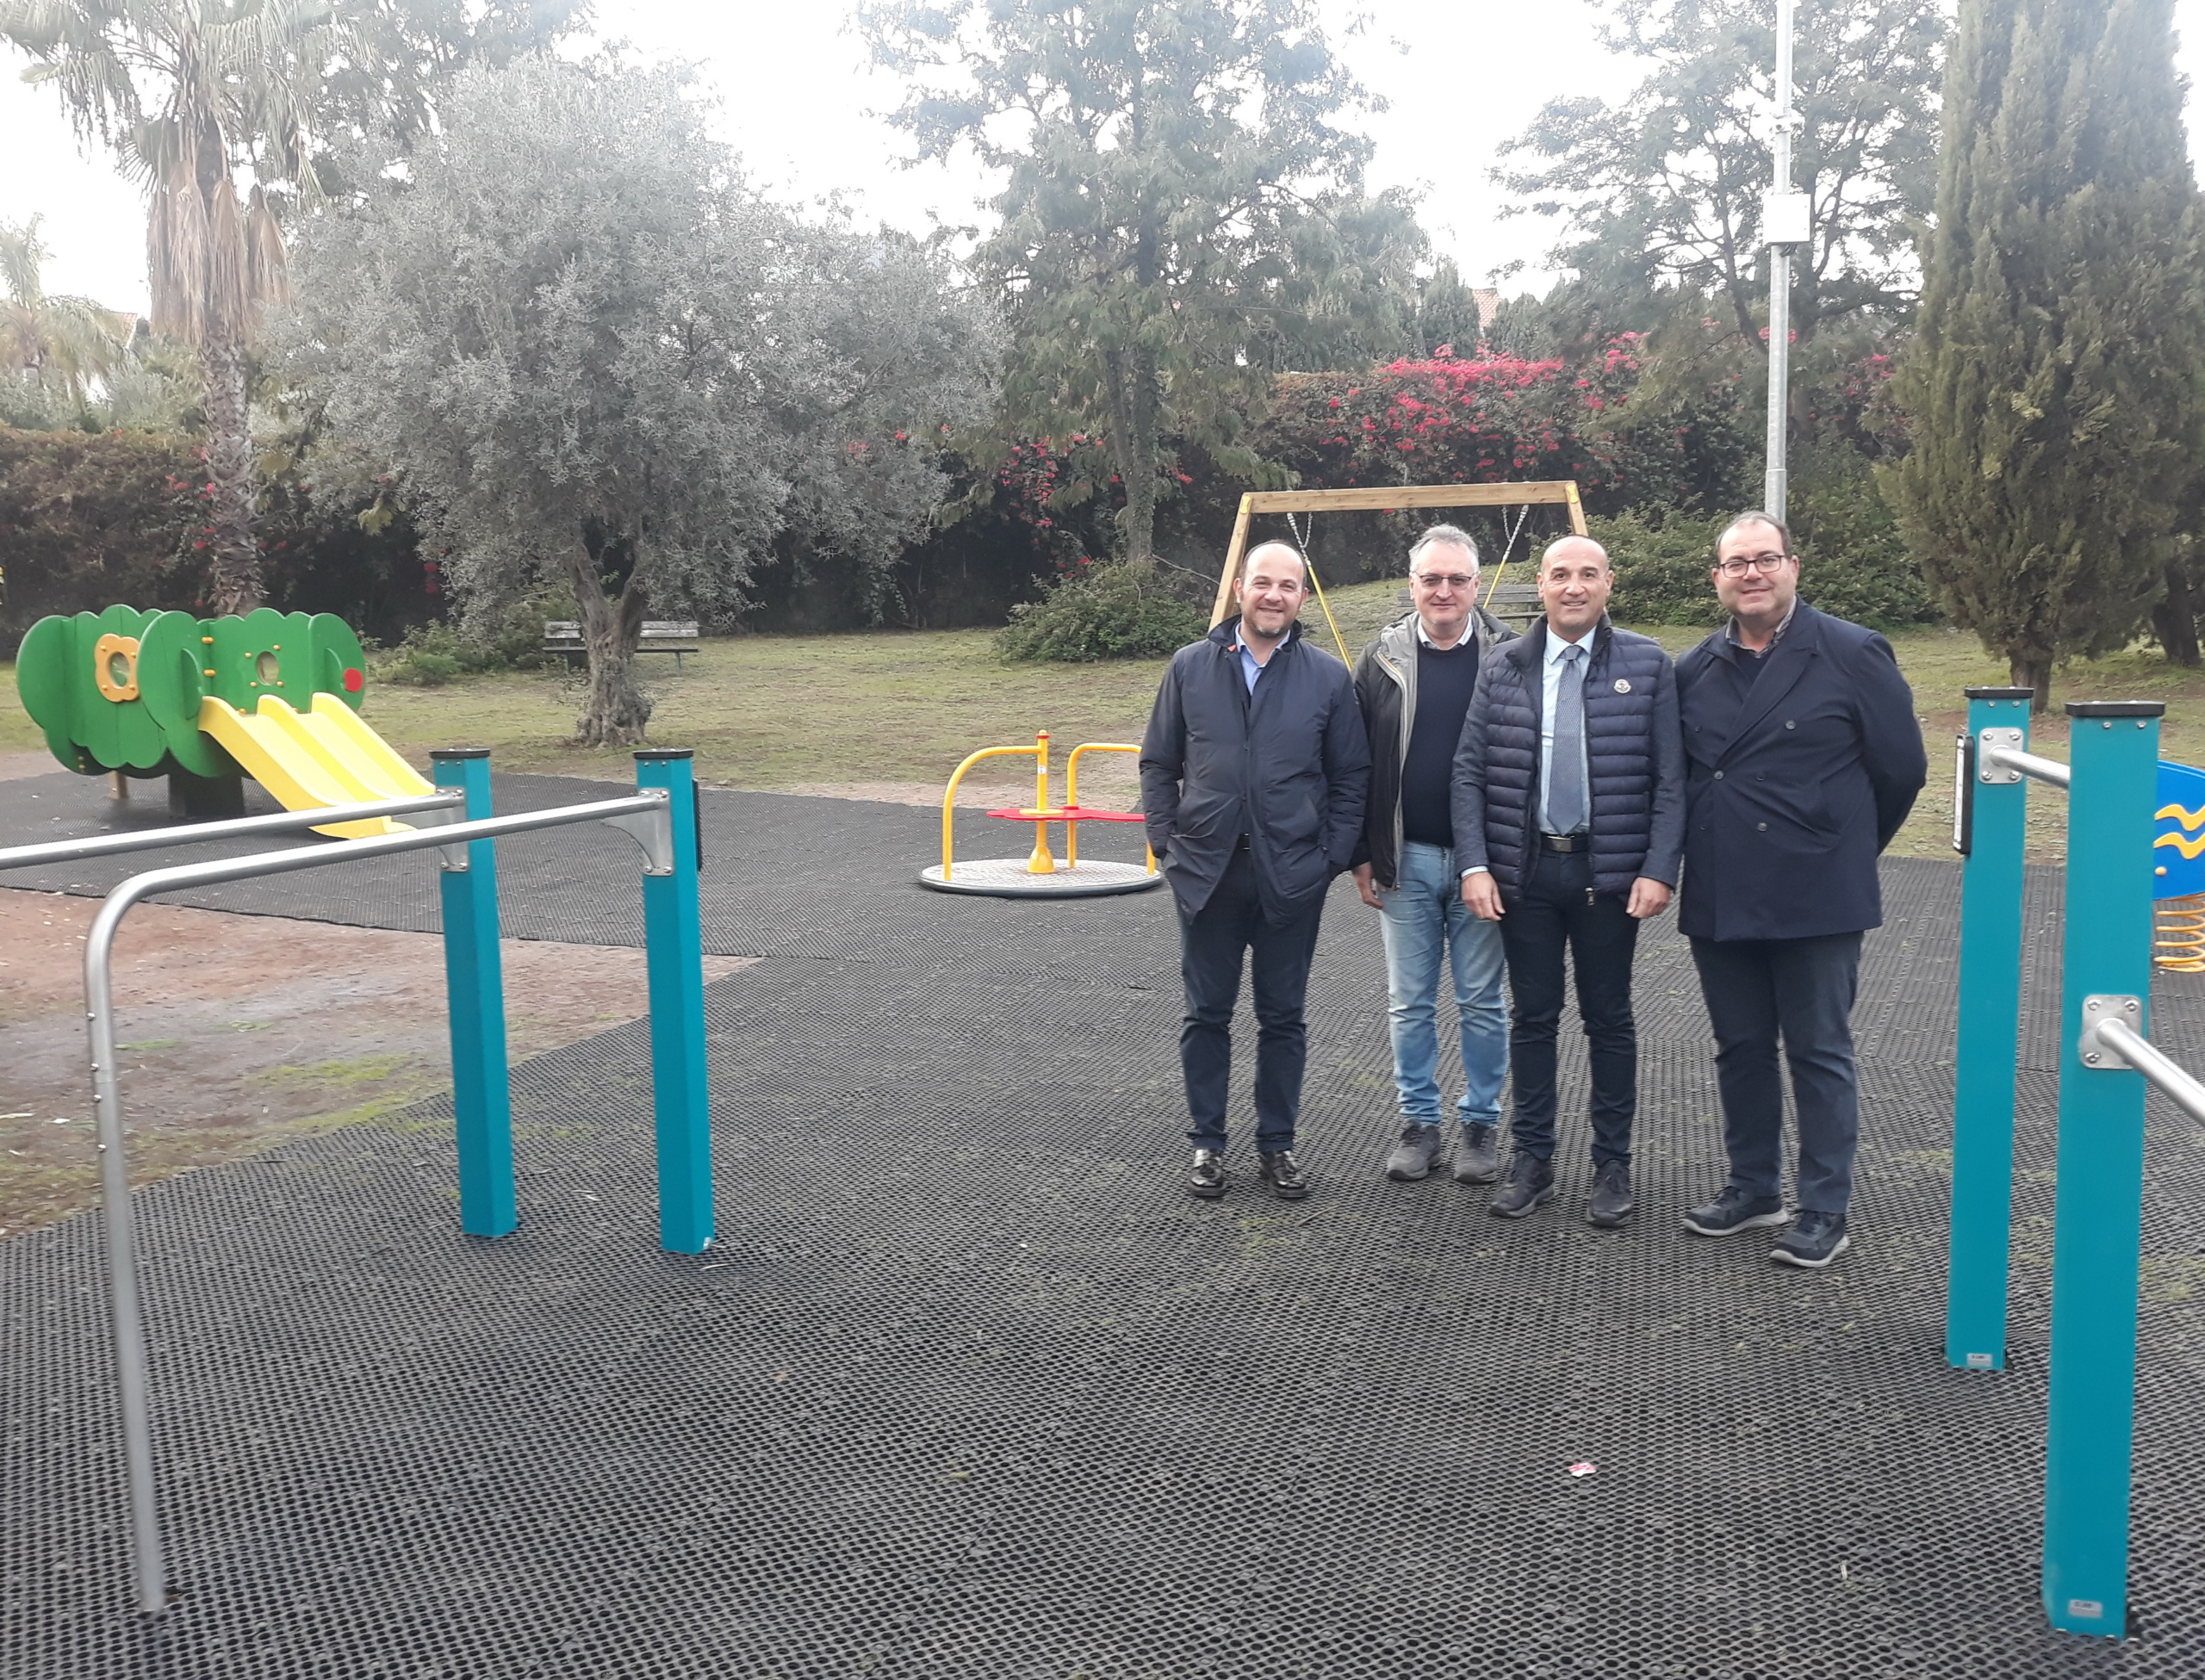 San Gregorio di Catania: inaugurati bambinopoli e percorso fitness al Parco Adige